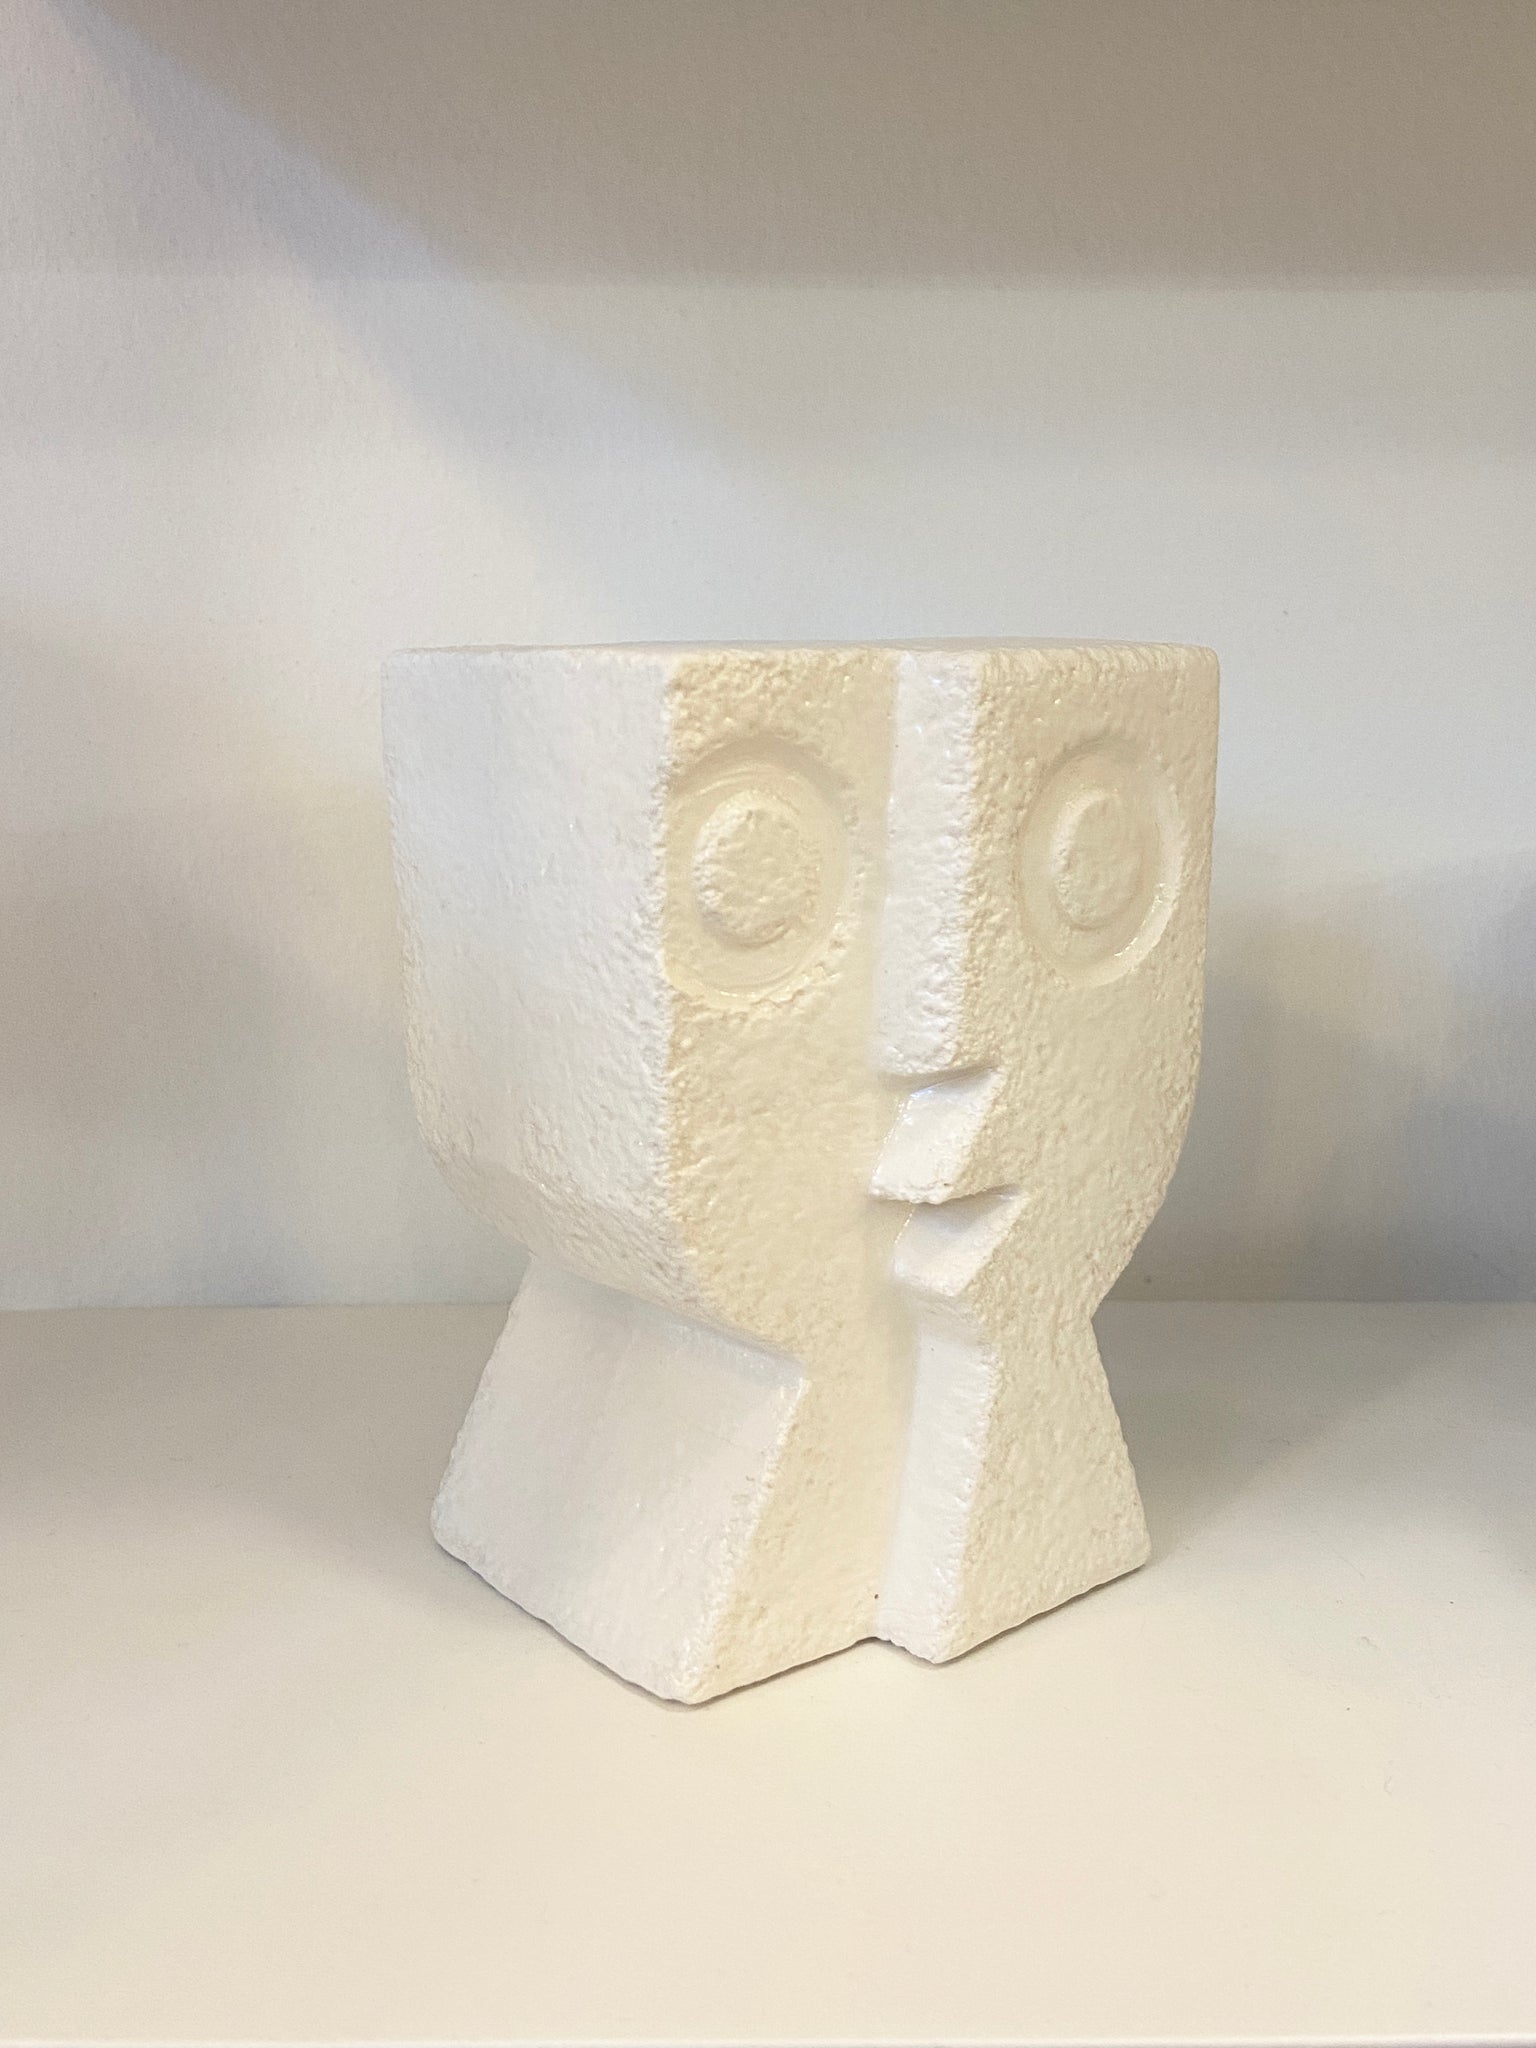 Medium Split Level Head Ceramic Sculpture